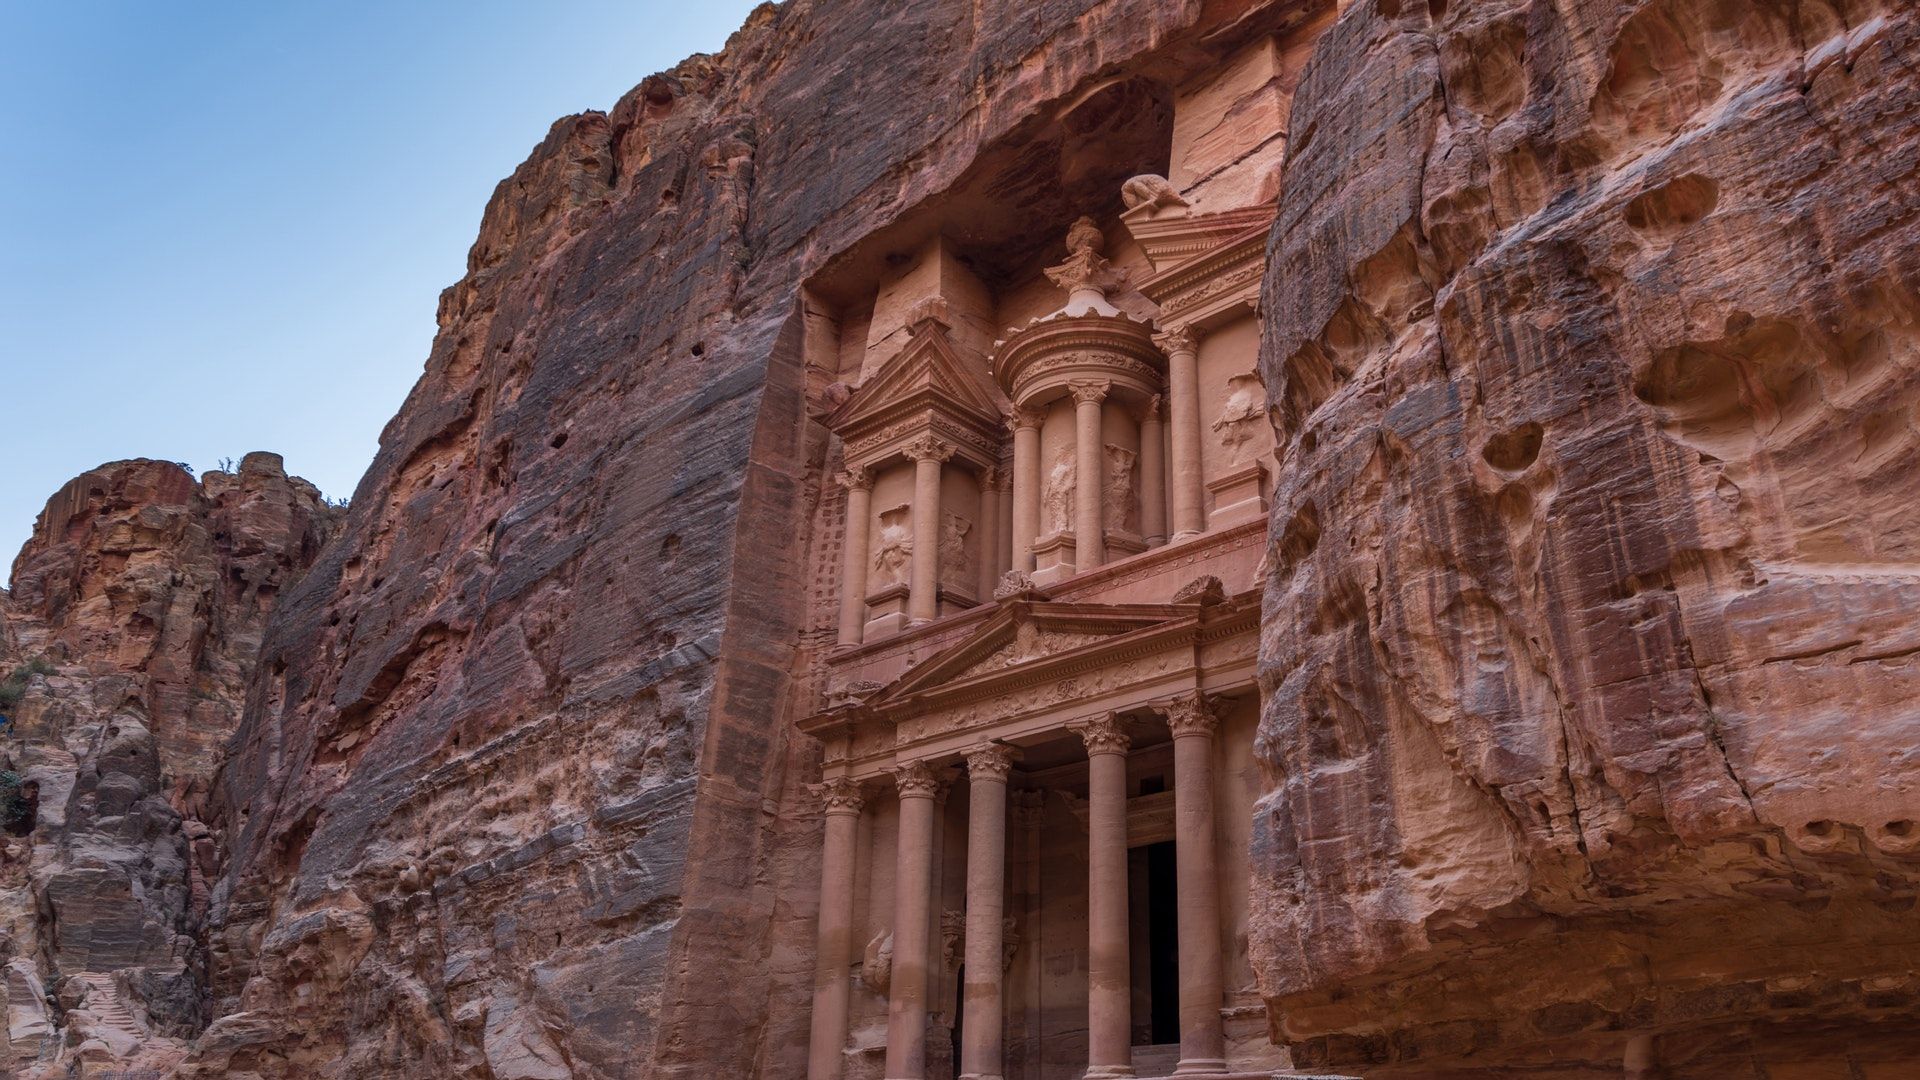 Petra in Jordan [1920x1080], wallpaperreddit.com